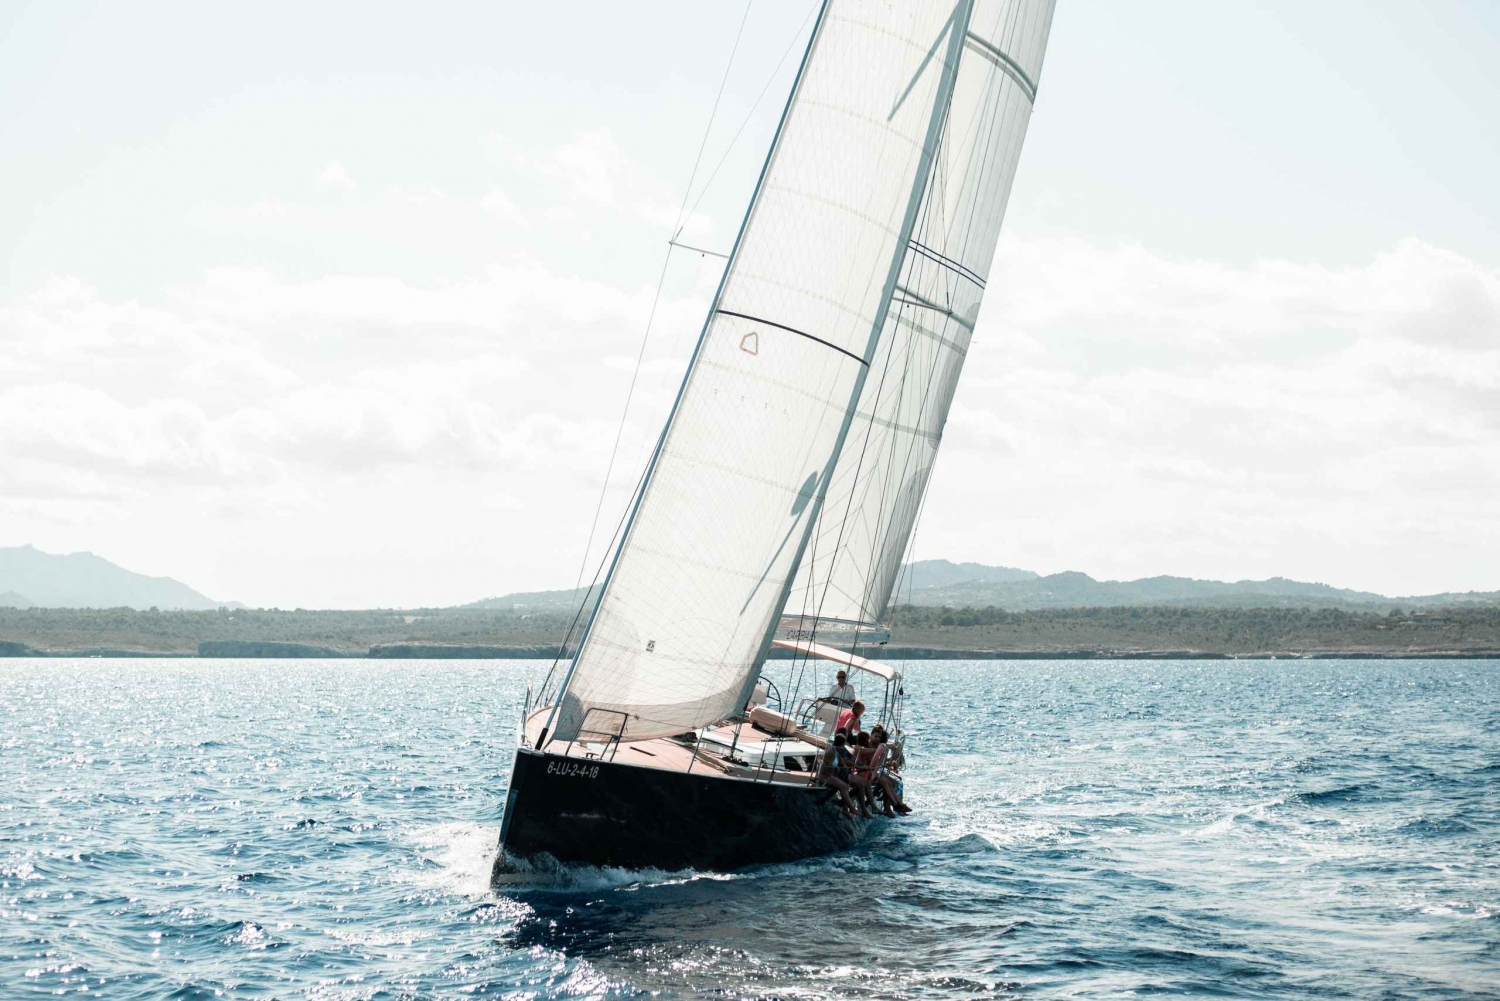 Alcudia: escursione privata unica di un'intera giornata in barca a vela